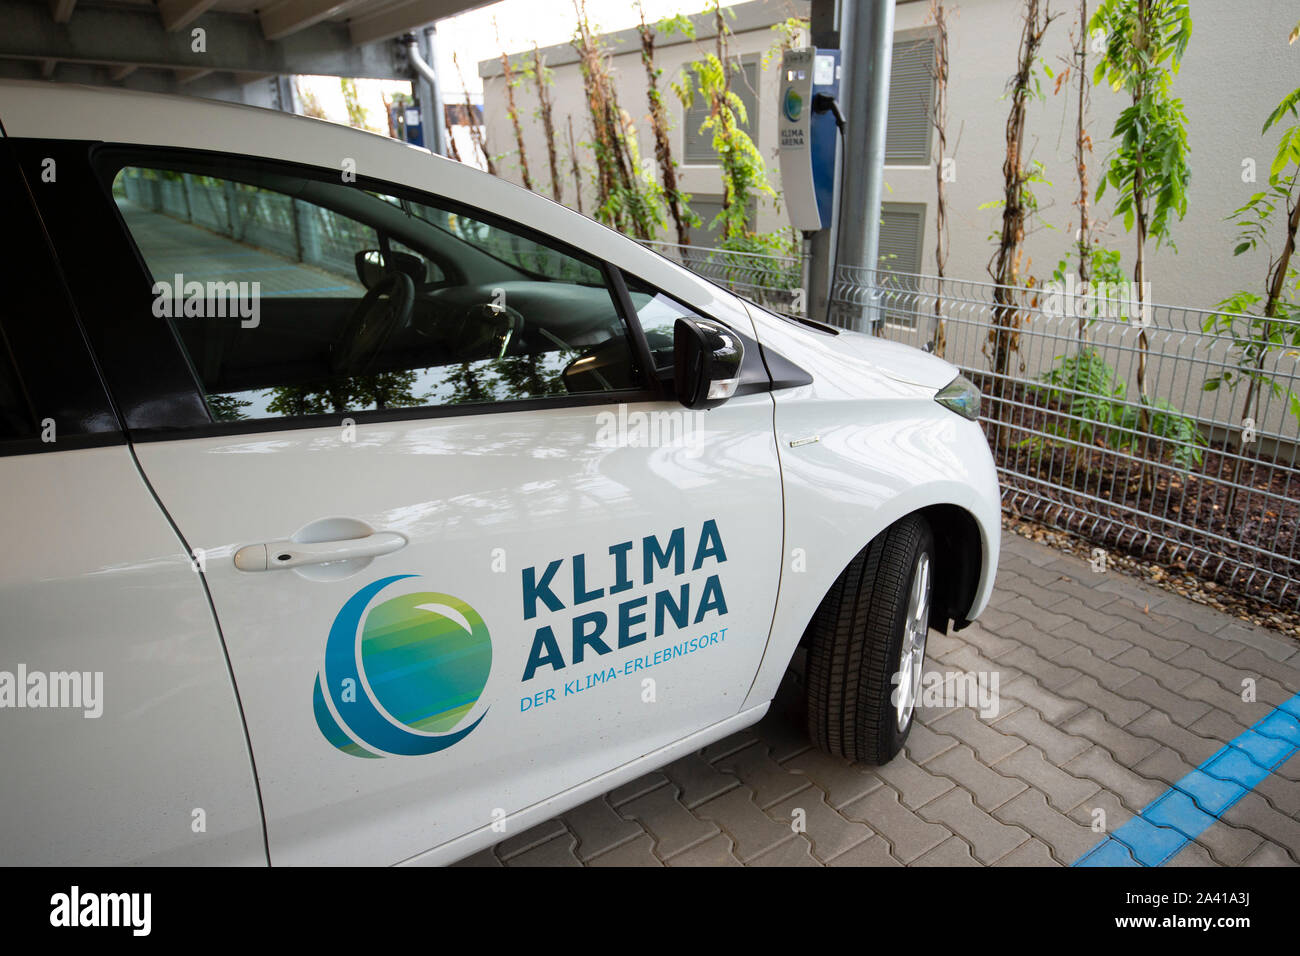 Ein Fahrzeug des Klima Arena, elektrische Auto an einer Ladestation, die Öffnung der Klima-Arena in Sinsheim, 07.10.2019, | Verwendung weltweit Stockfoto